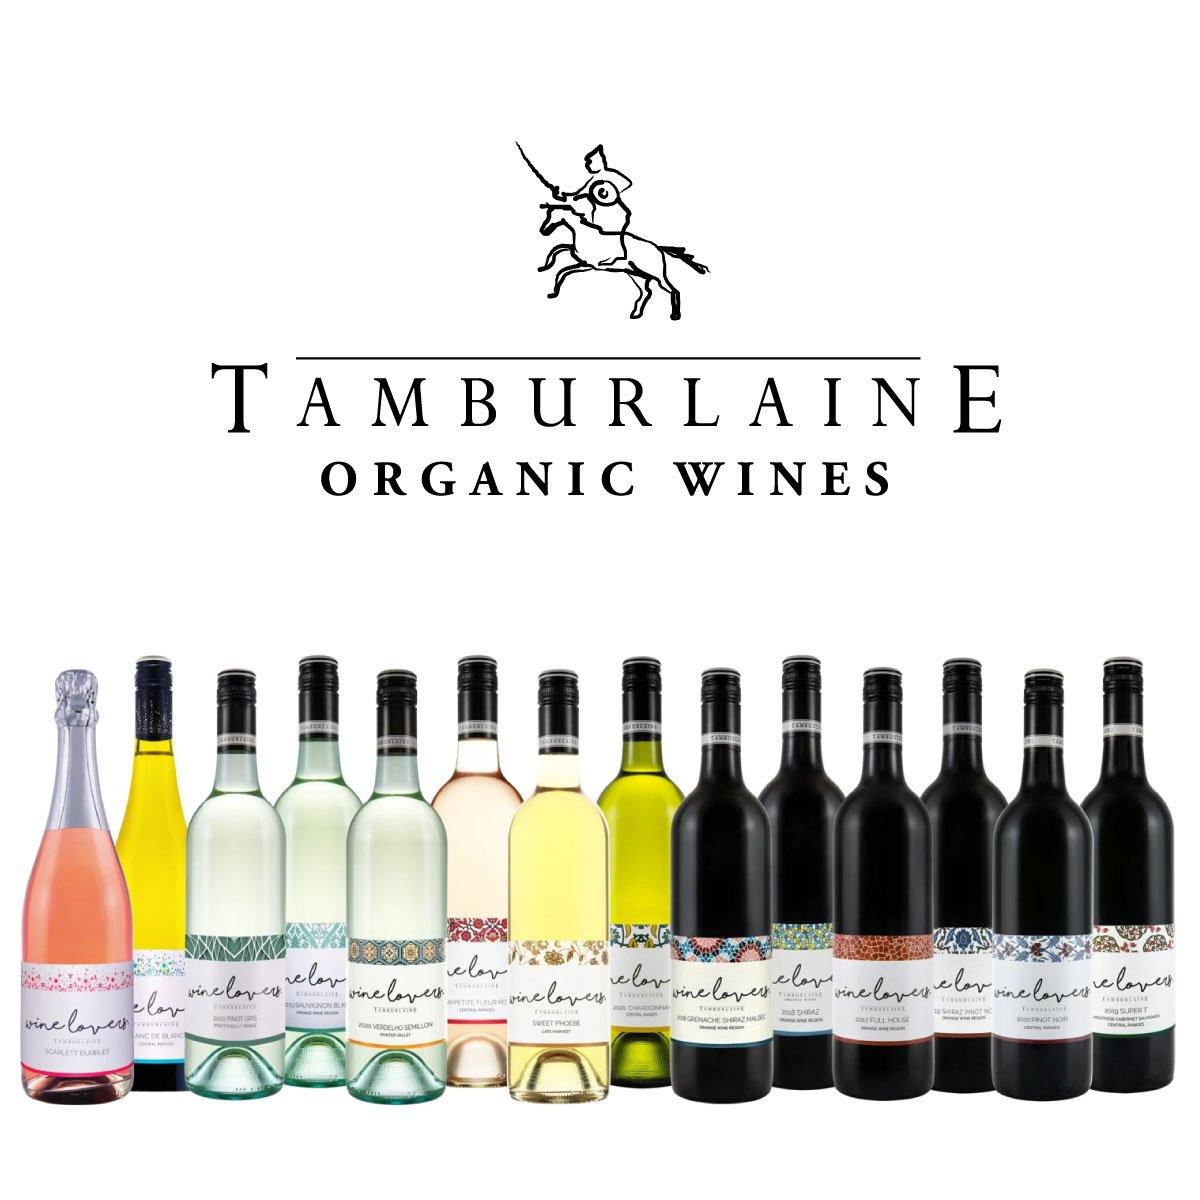 Tamburlaine Organic Wines